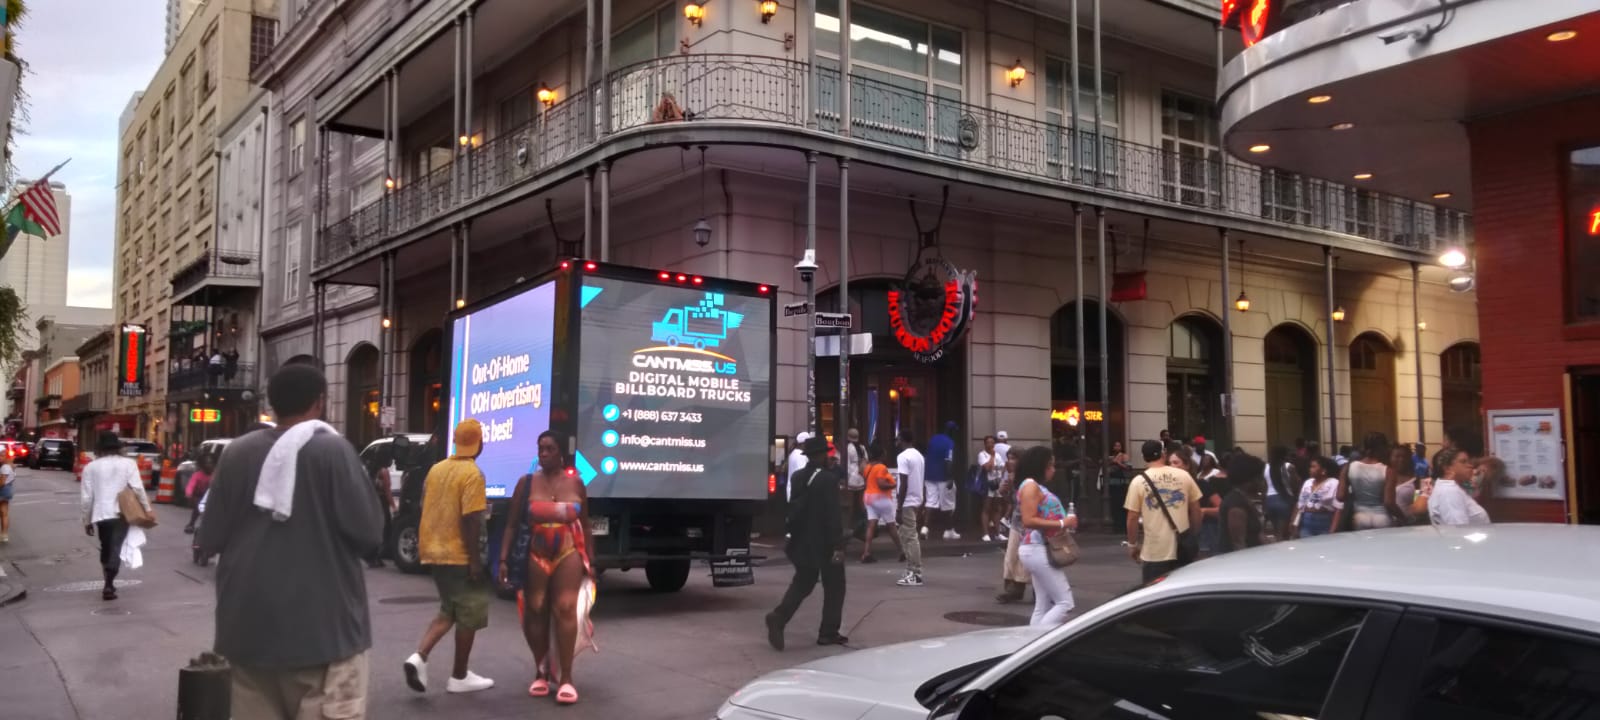 New Orleans Digital Mobile LED Billboards